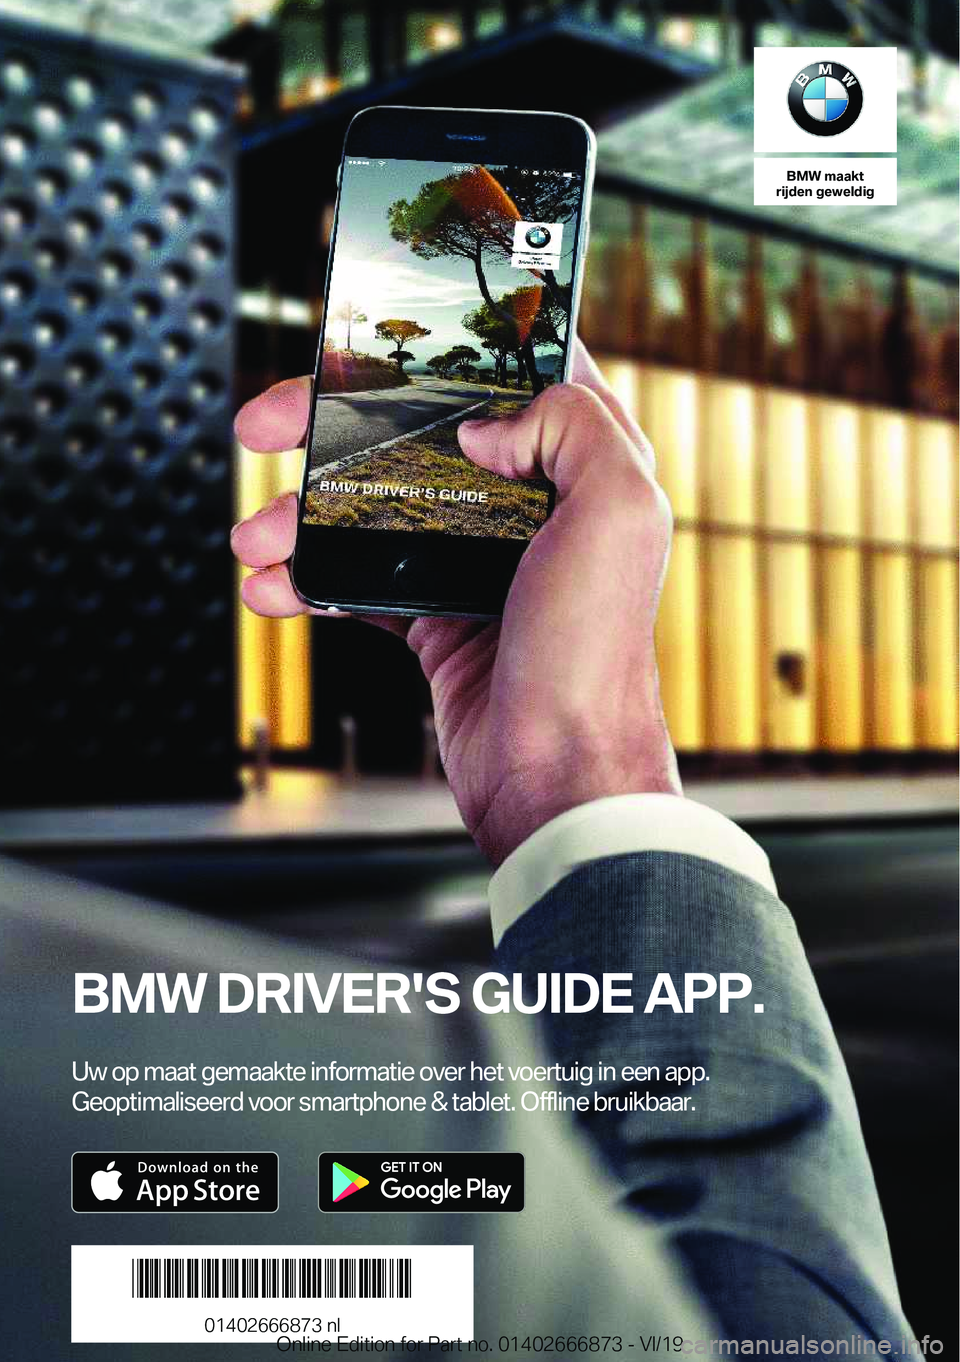 BMW X4 M 2020  Instructieboekjes (in Dutch) �B�M�W��m�a�a�k�t
�r�i�j�d�e�n��g�e�w�e�l�d�i�g
�B�M�W��D�R�I�V�E�R�'�S��G�U�I�D�E��A�P�P�.
�U�w��o�p��m�a�a�t��g�e�m�a�a�k�t�e��i�n�f�o�r�m�a�t�i�e��o�v�e�r��h�e�t��v�o�e�r�t�u�i�g��